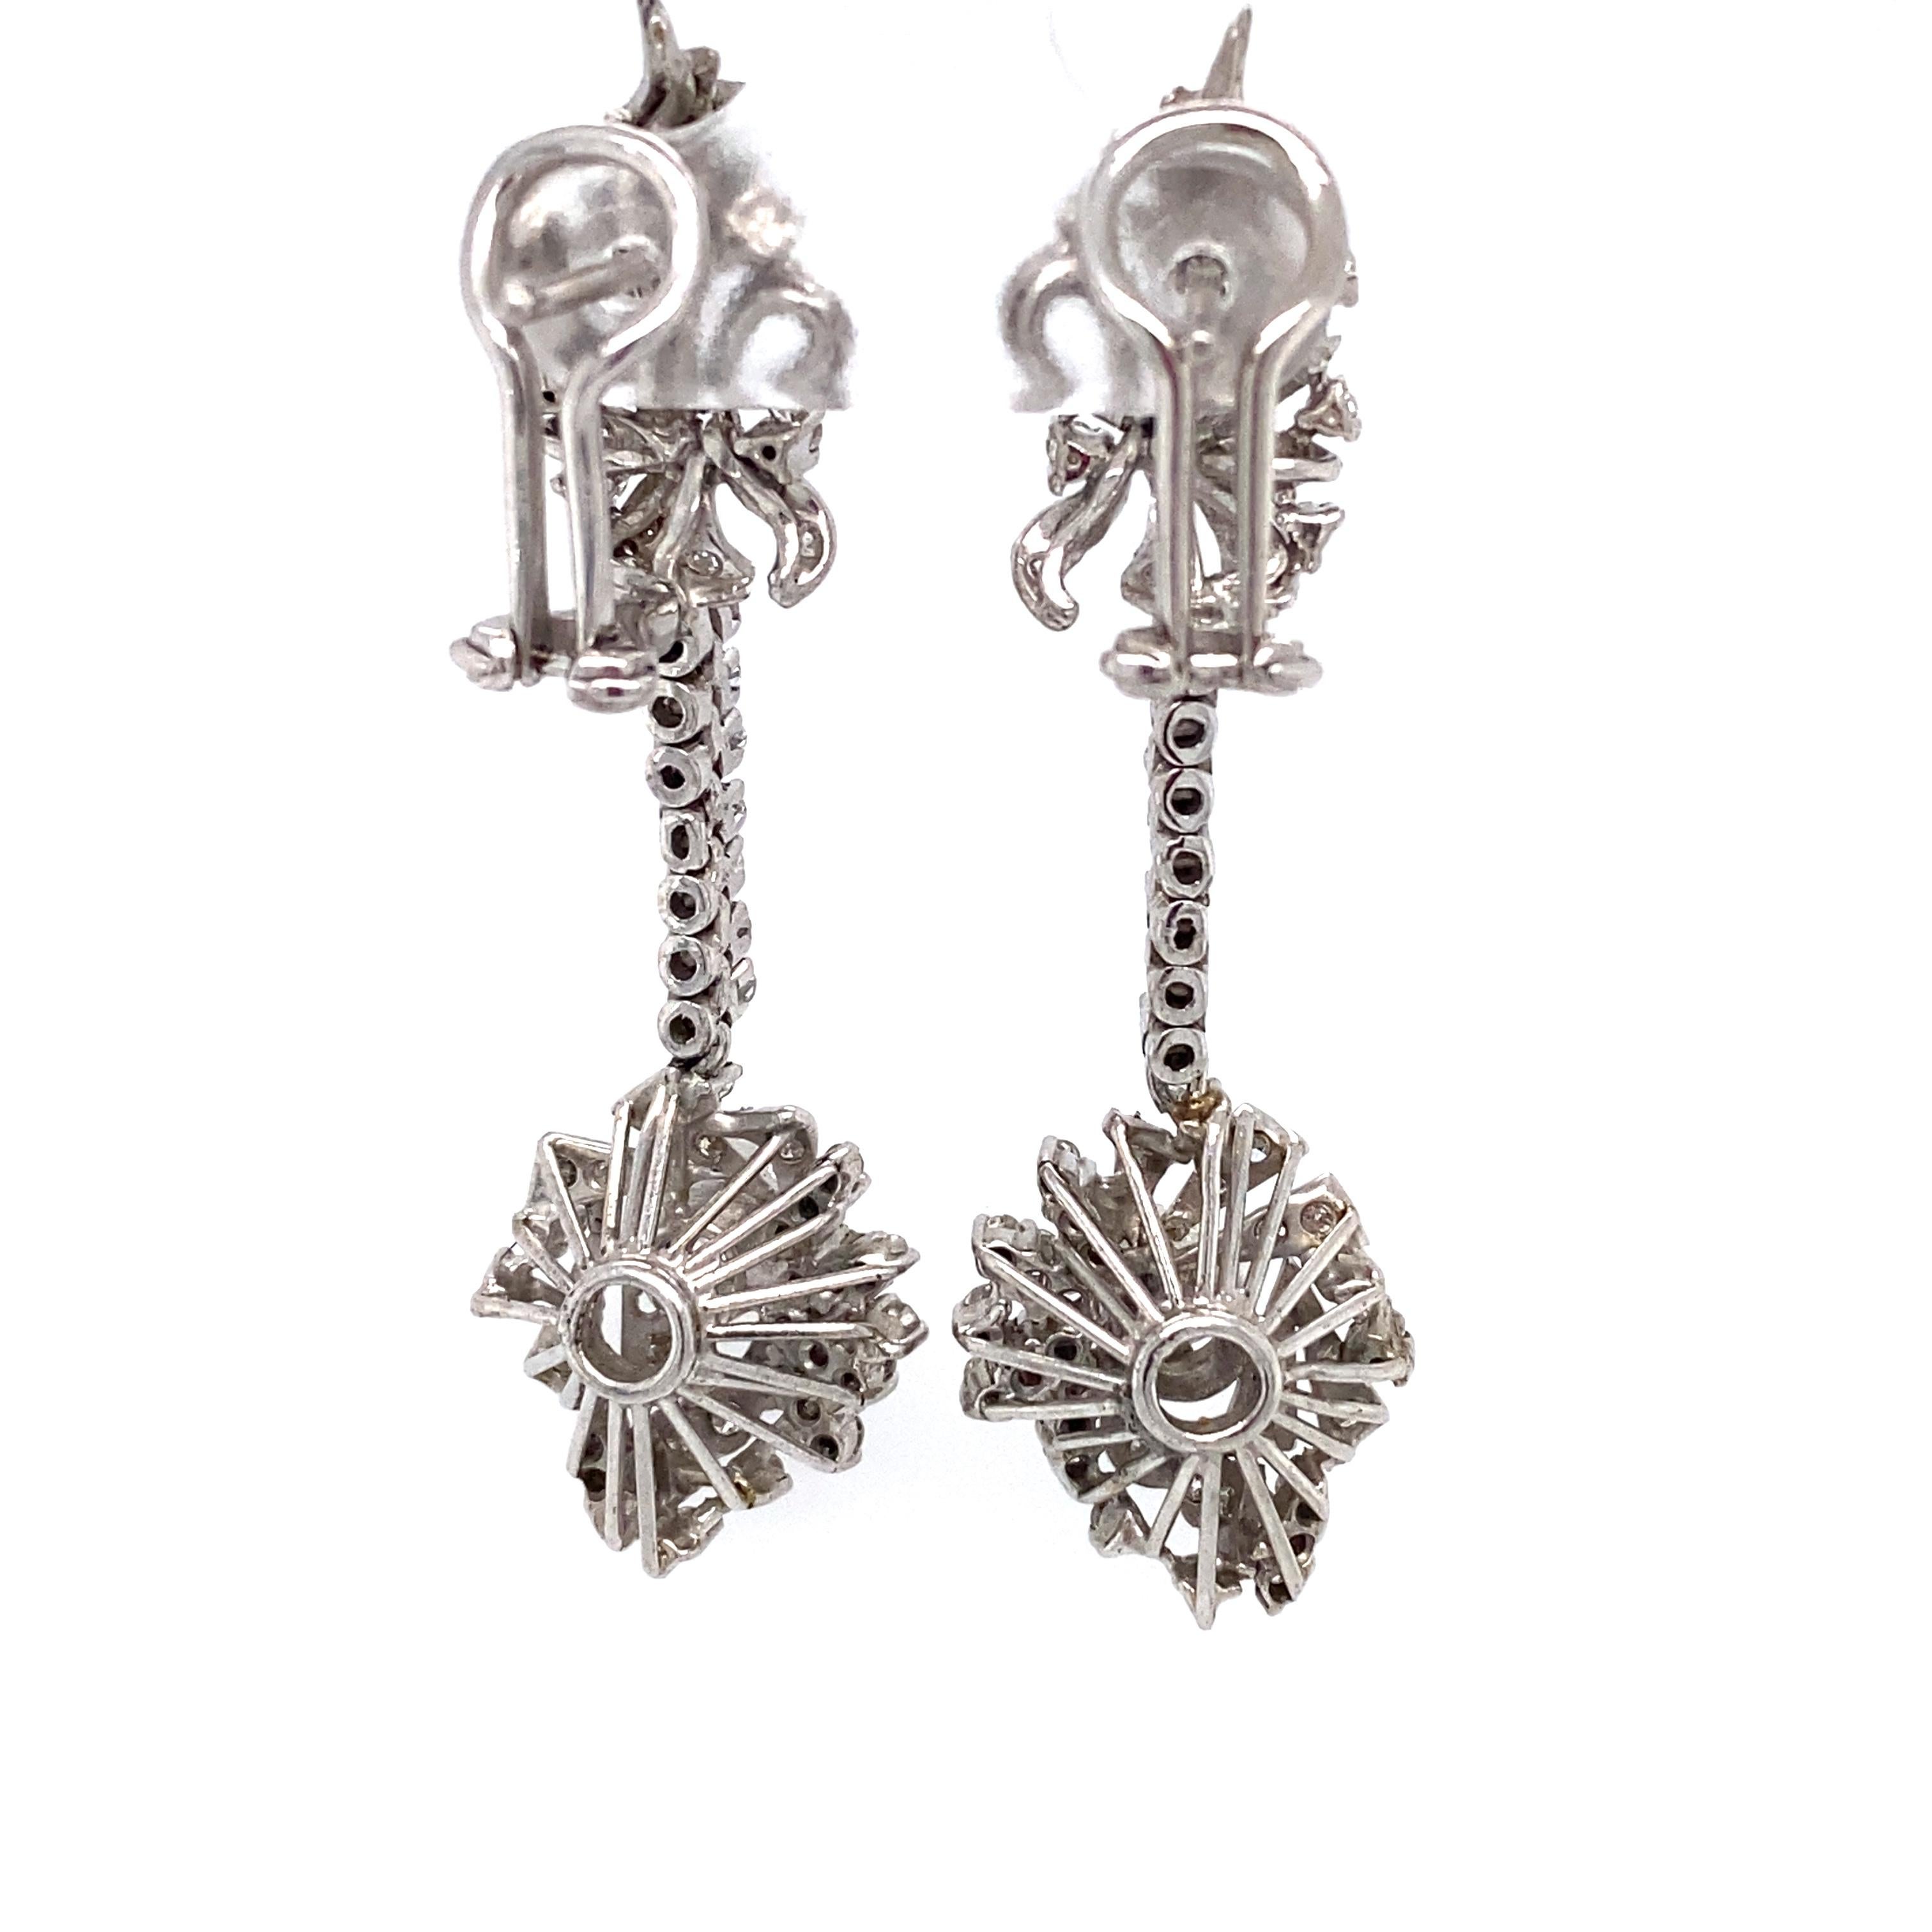 1930's earrings